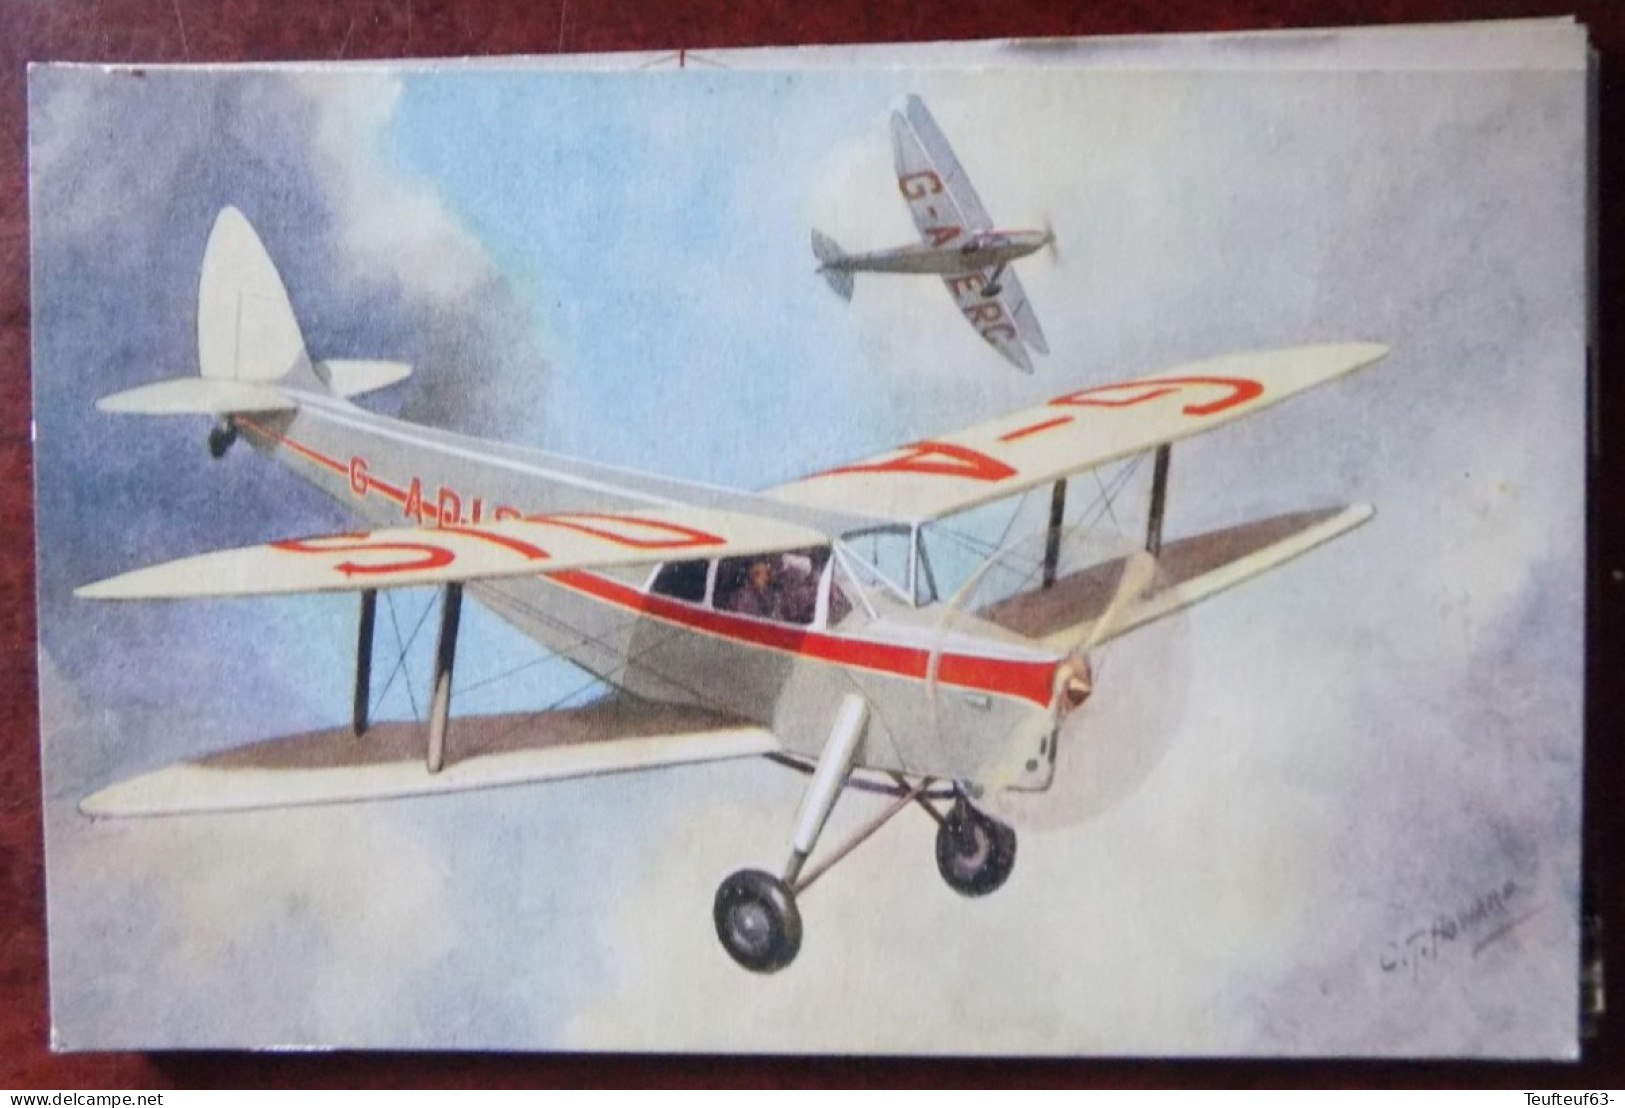 Cpa De Havilland " Hornet Moth "  - Ill. Howard - 1919-1938